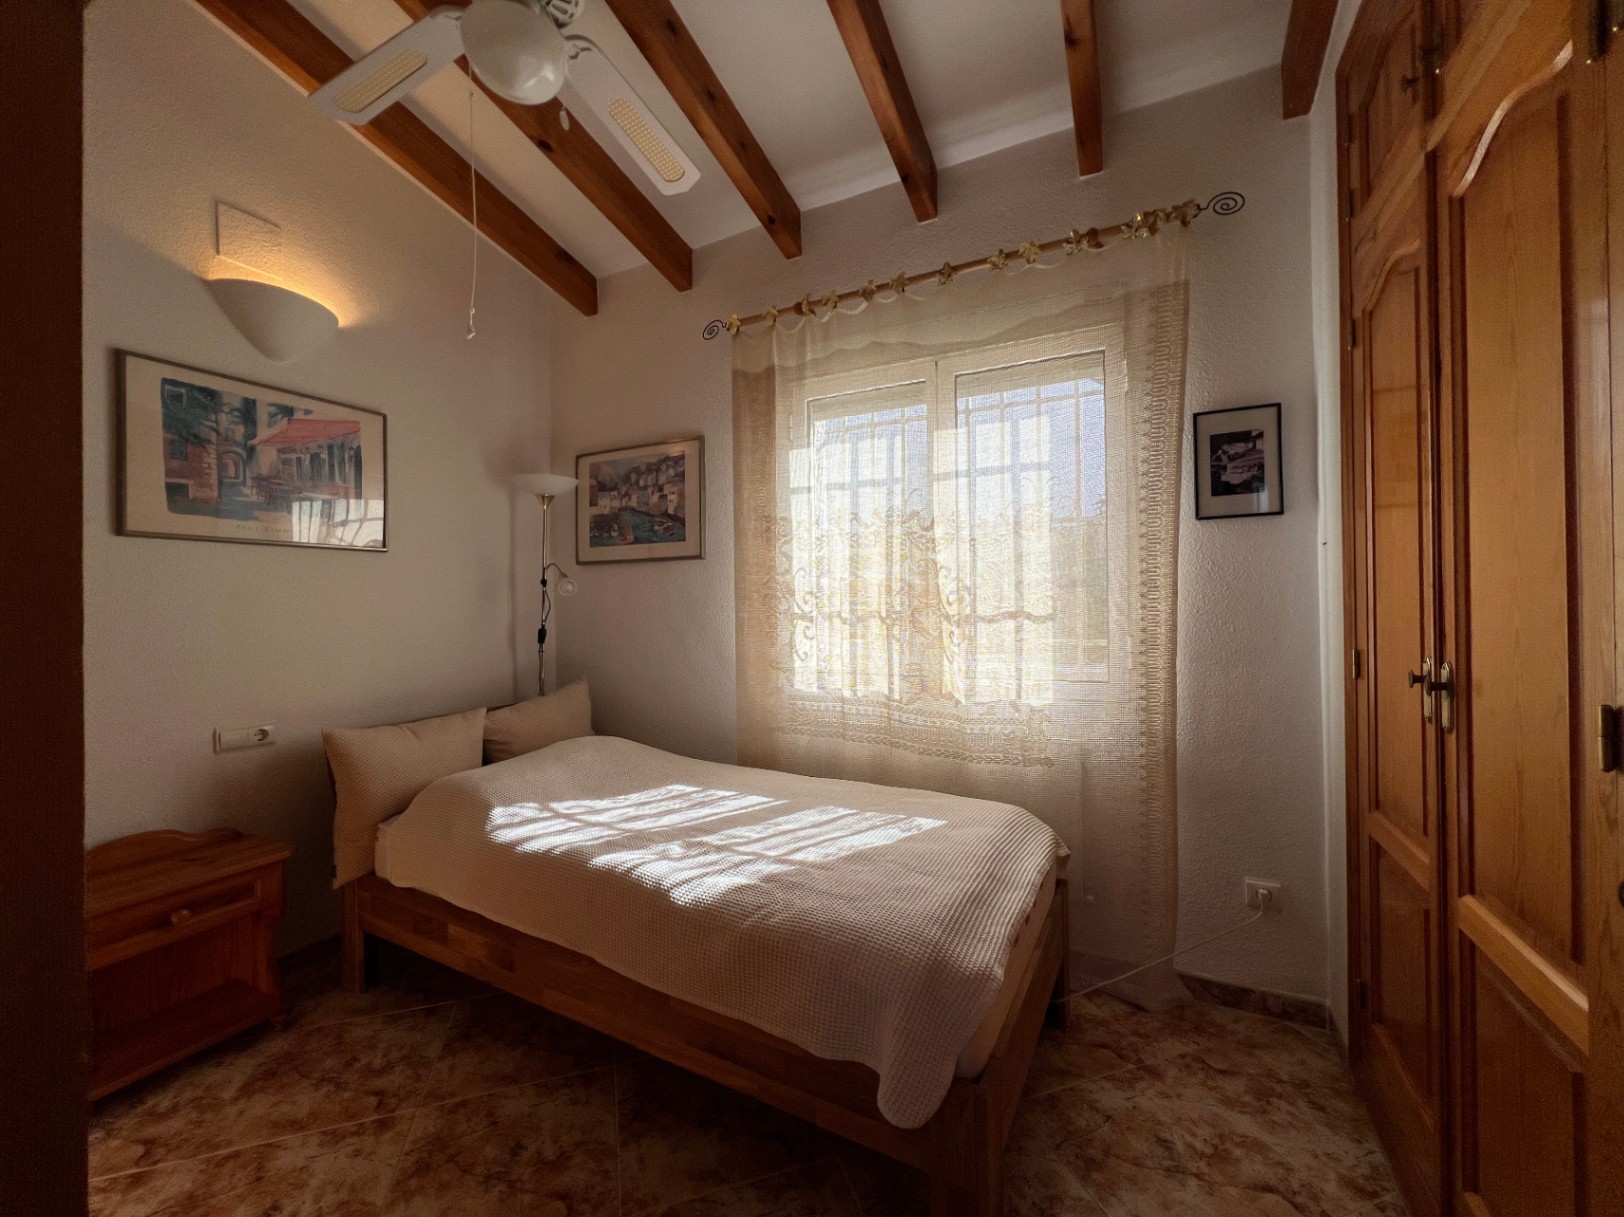 Makellose Villa mit freiem Meer-und Bergblick und separatem Apartment mit grosser Terrasse auf dem Monte Pego